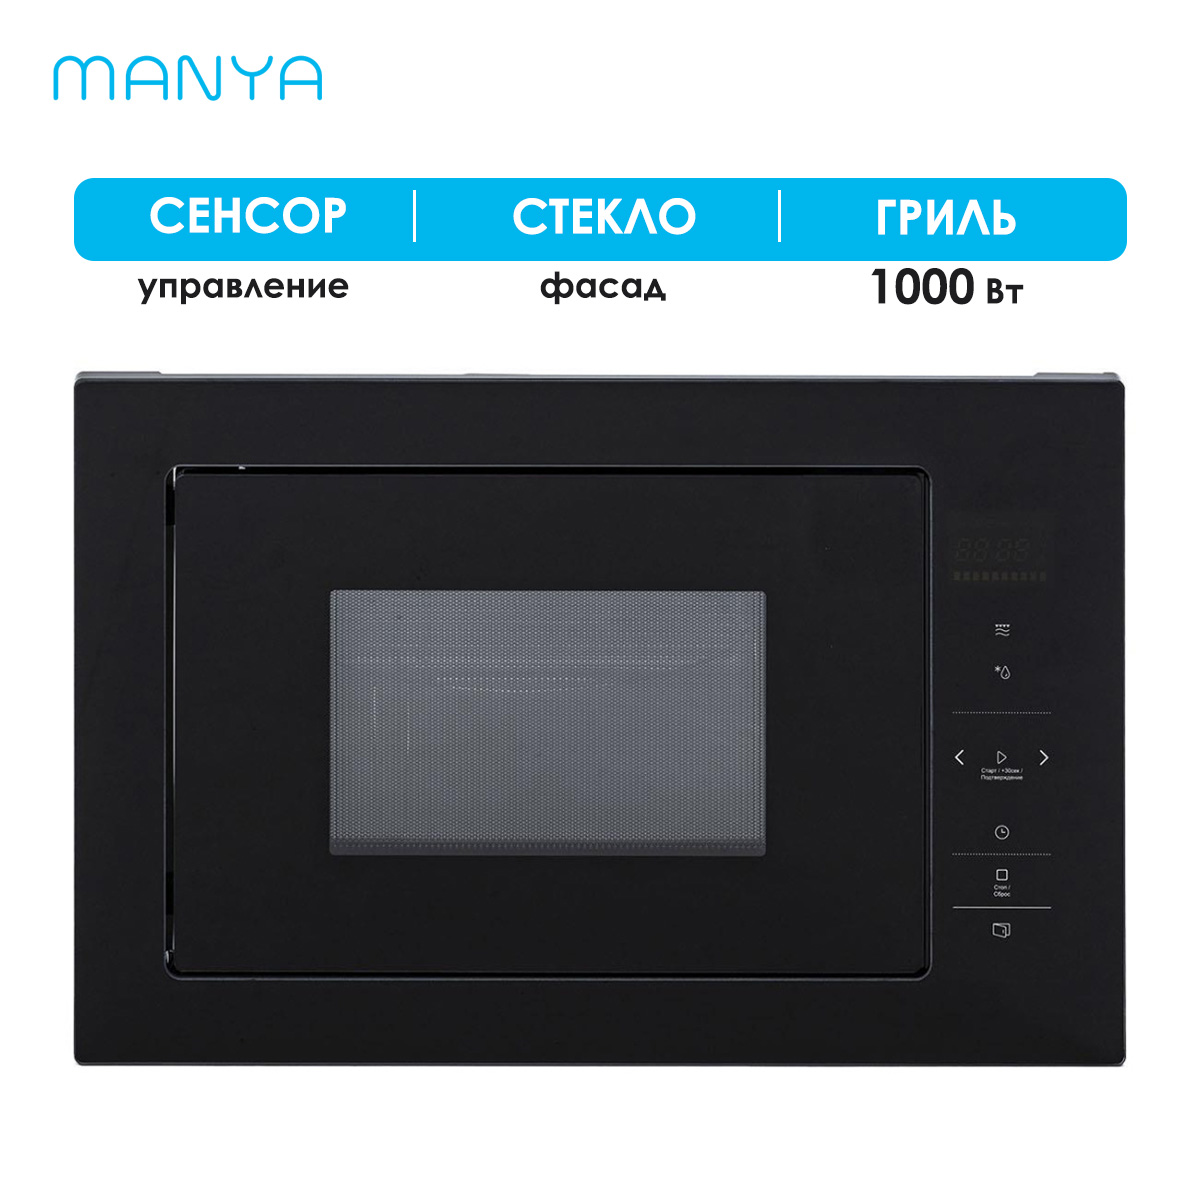 Встраиваемая микроволновая печь Manya BM2511BG черная встраиваемая микроволновая печь manya bm2511bg черная